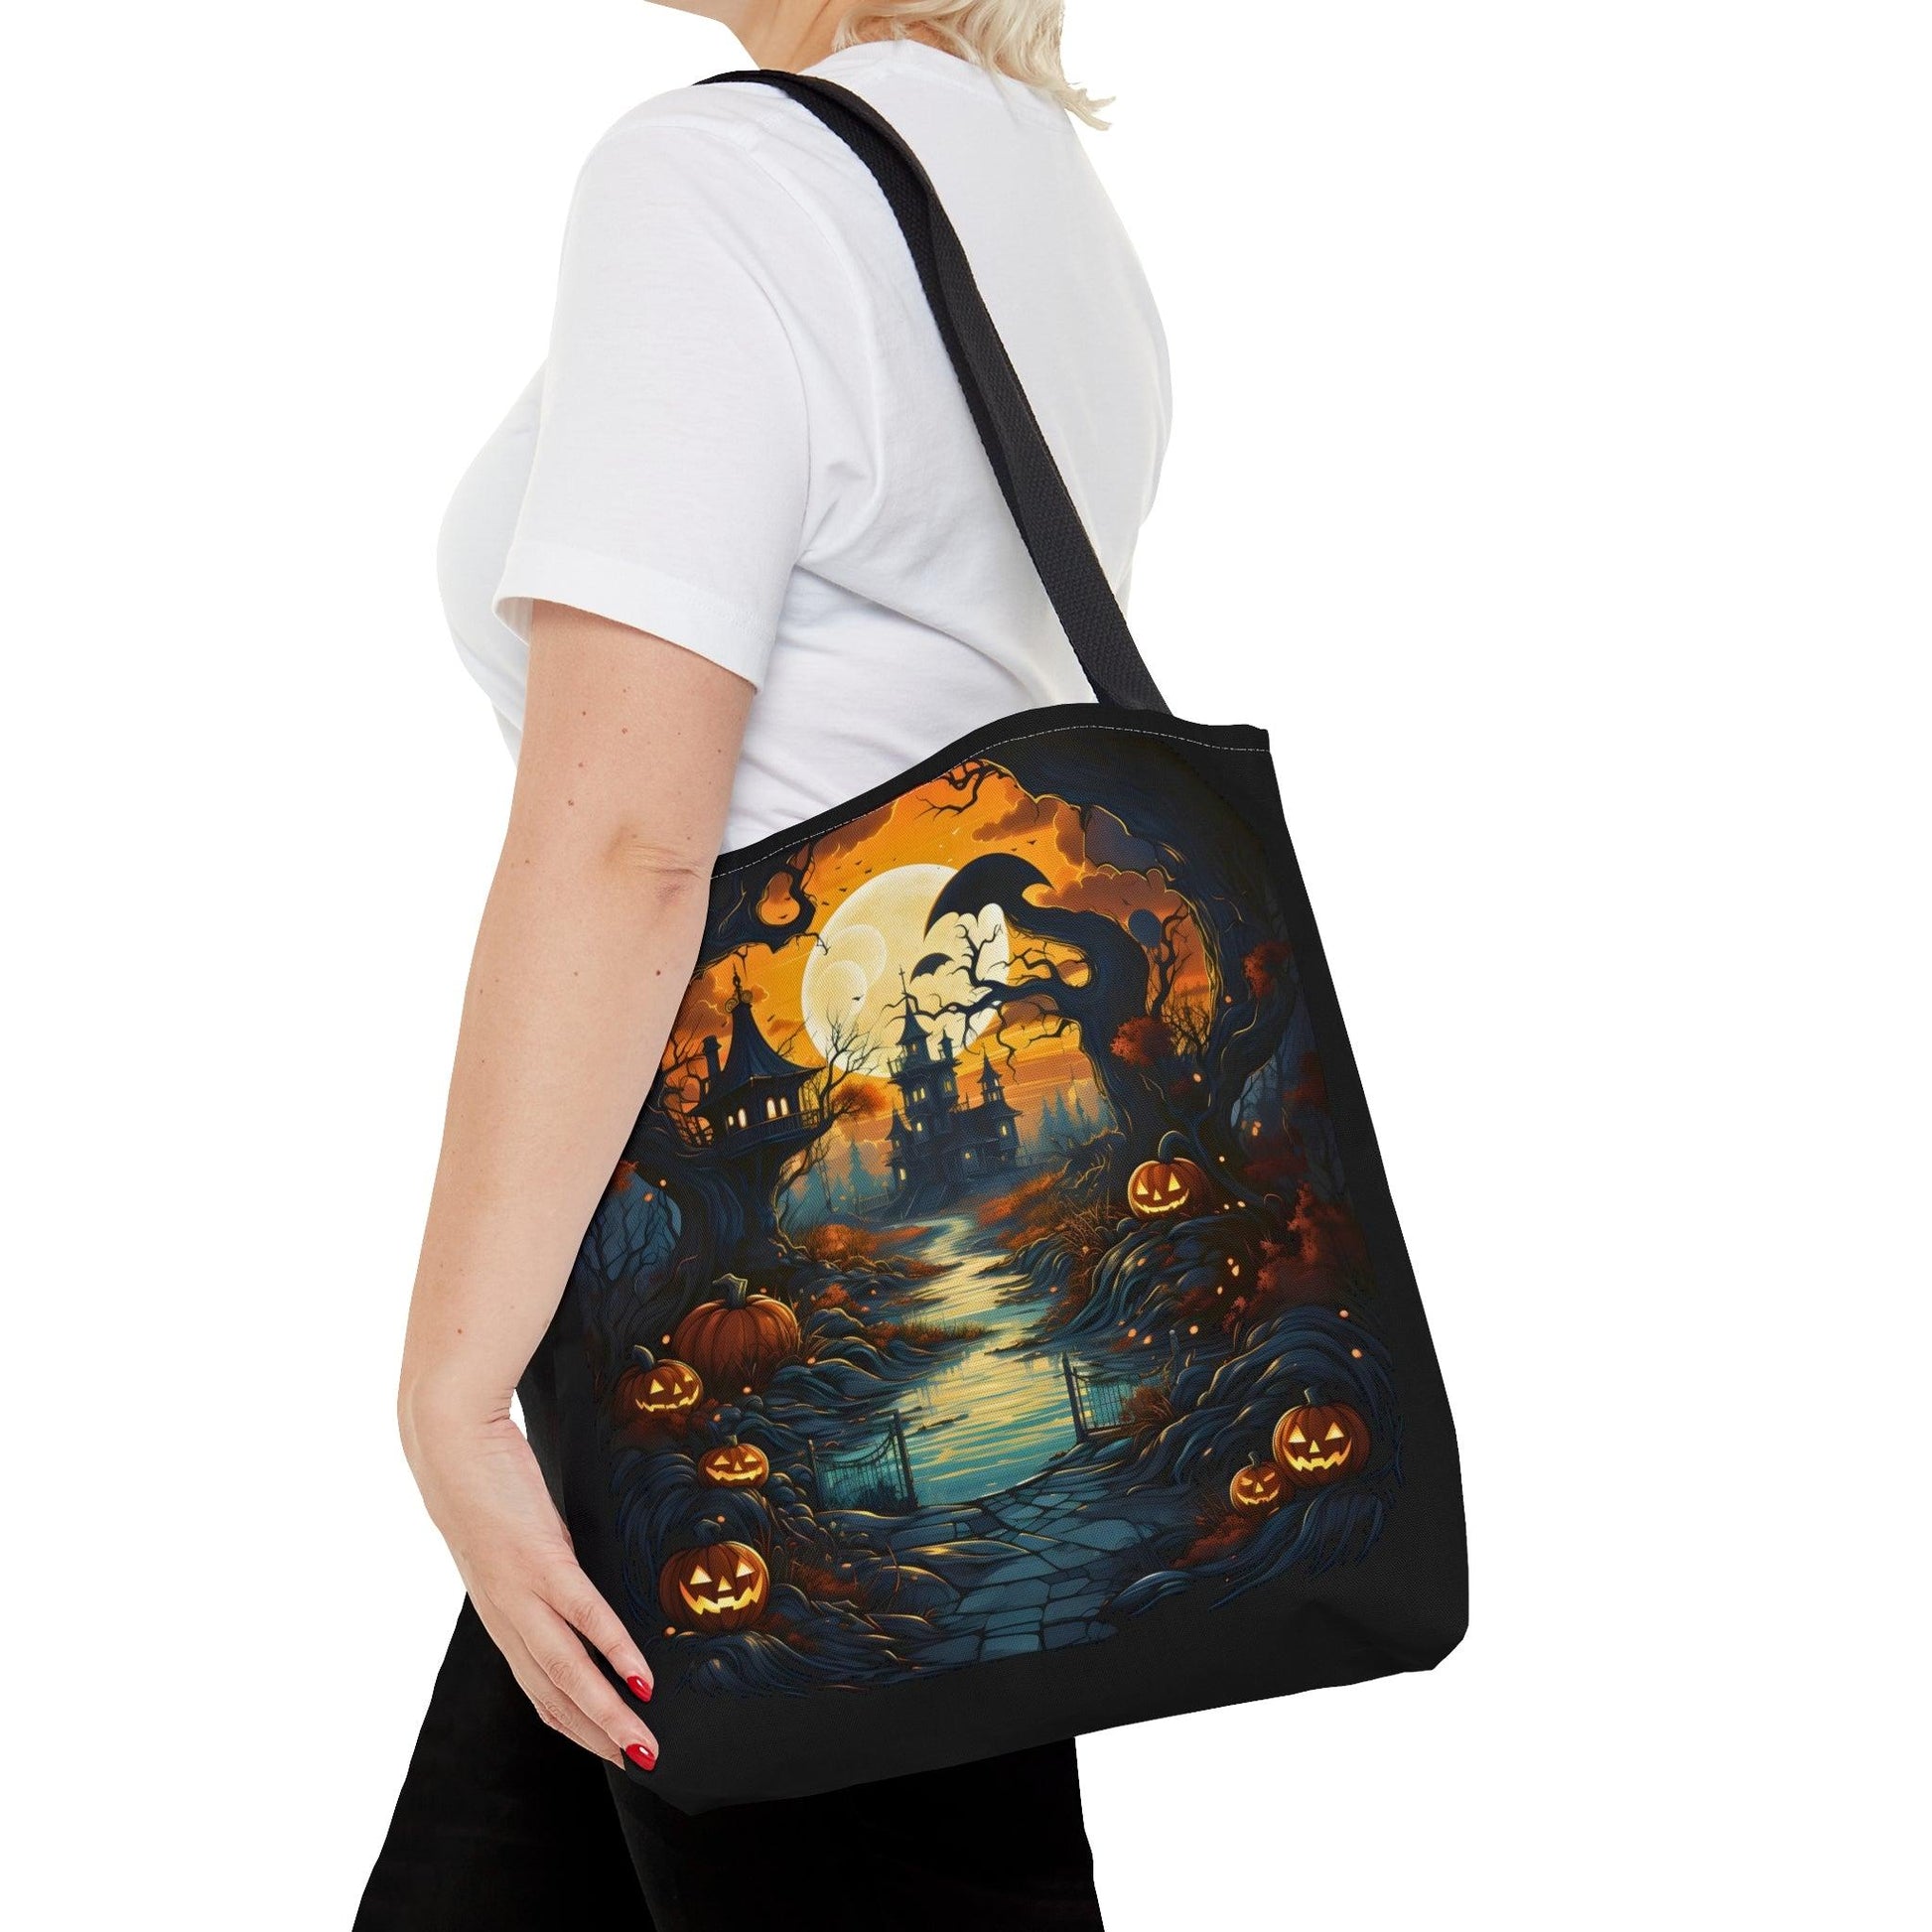 Happy Halloween Bag Trick or Treat Bag Love Fall Pumpkin Tote Bag Cute Market Bag - Aesthetic Bag, Fall Tote Bag, Mom Bag Canvas Bag - Giftsmojo